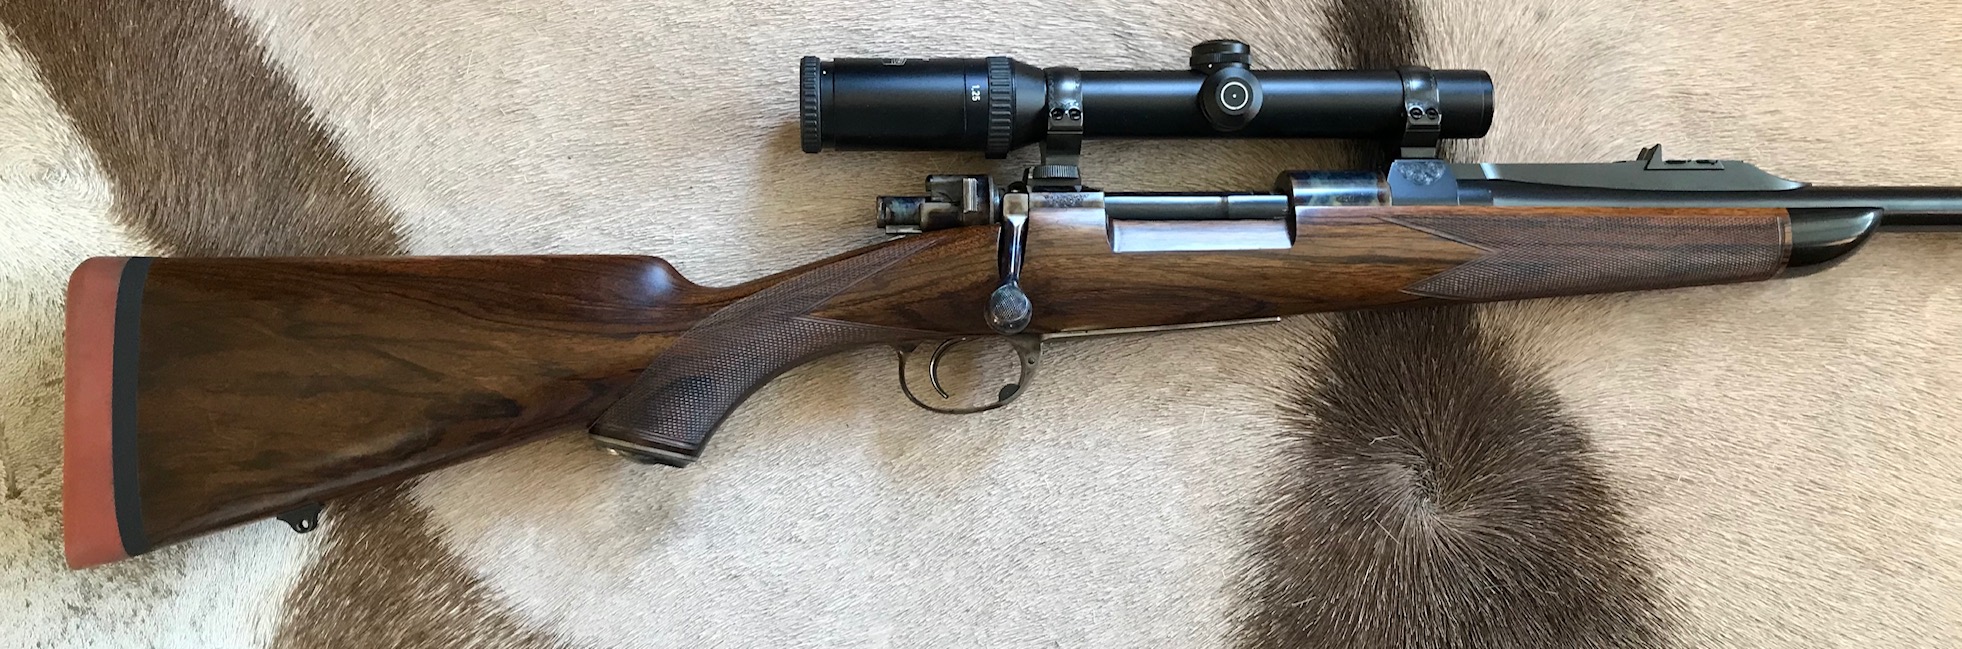 Custom Mauser by NECG in .35 Whelen